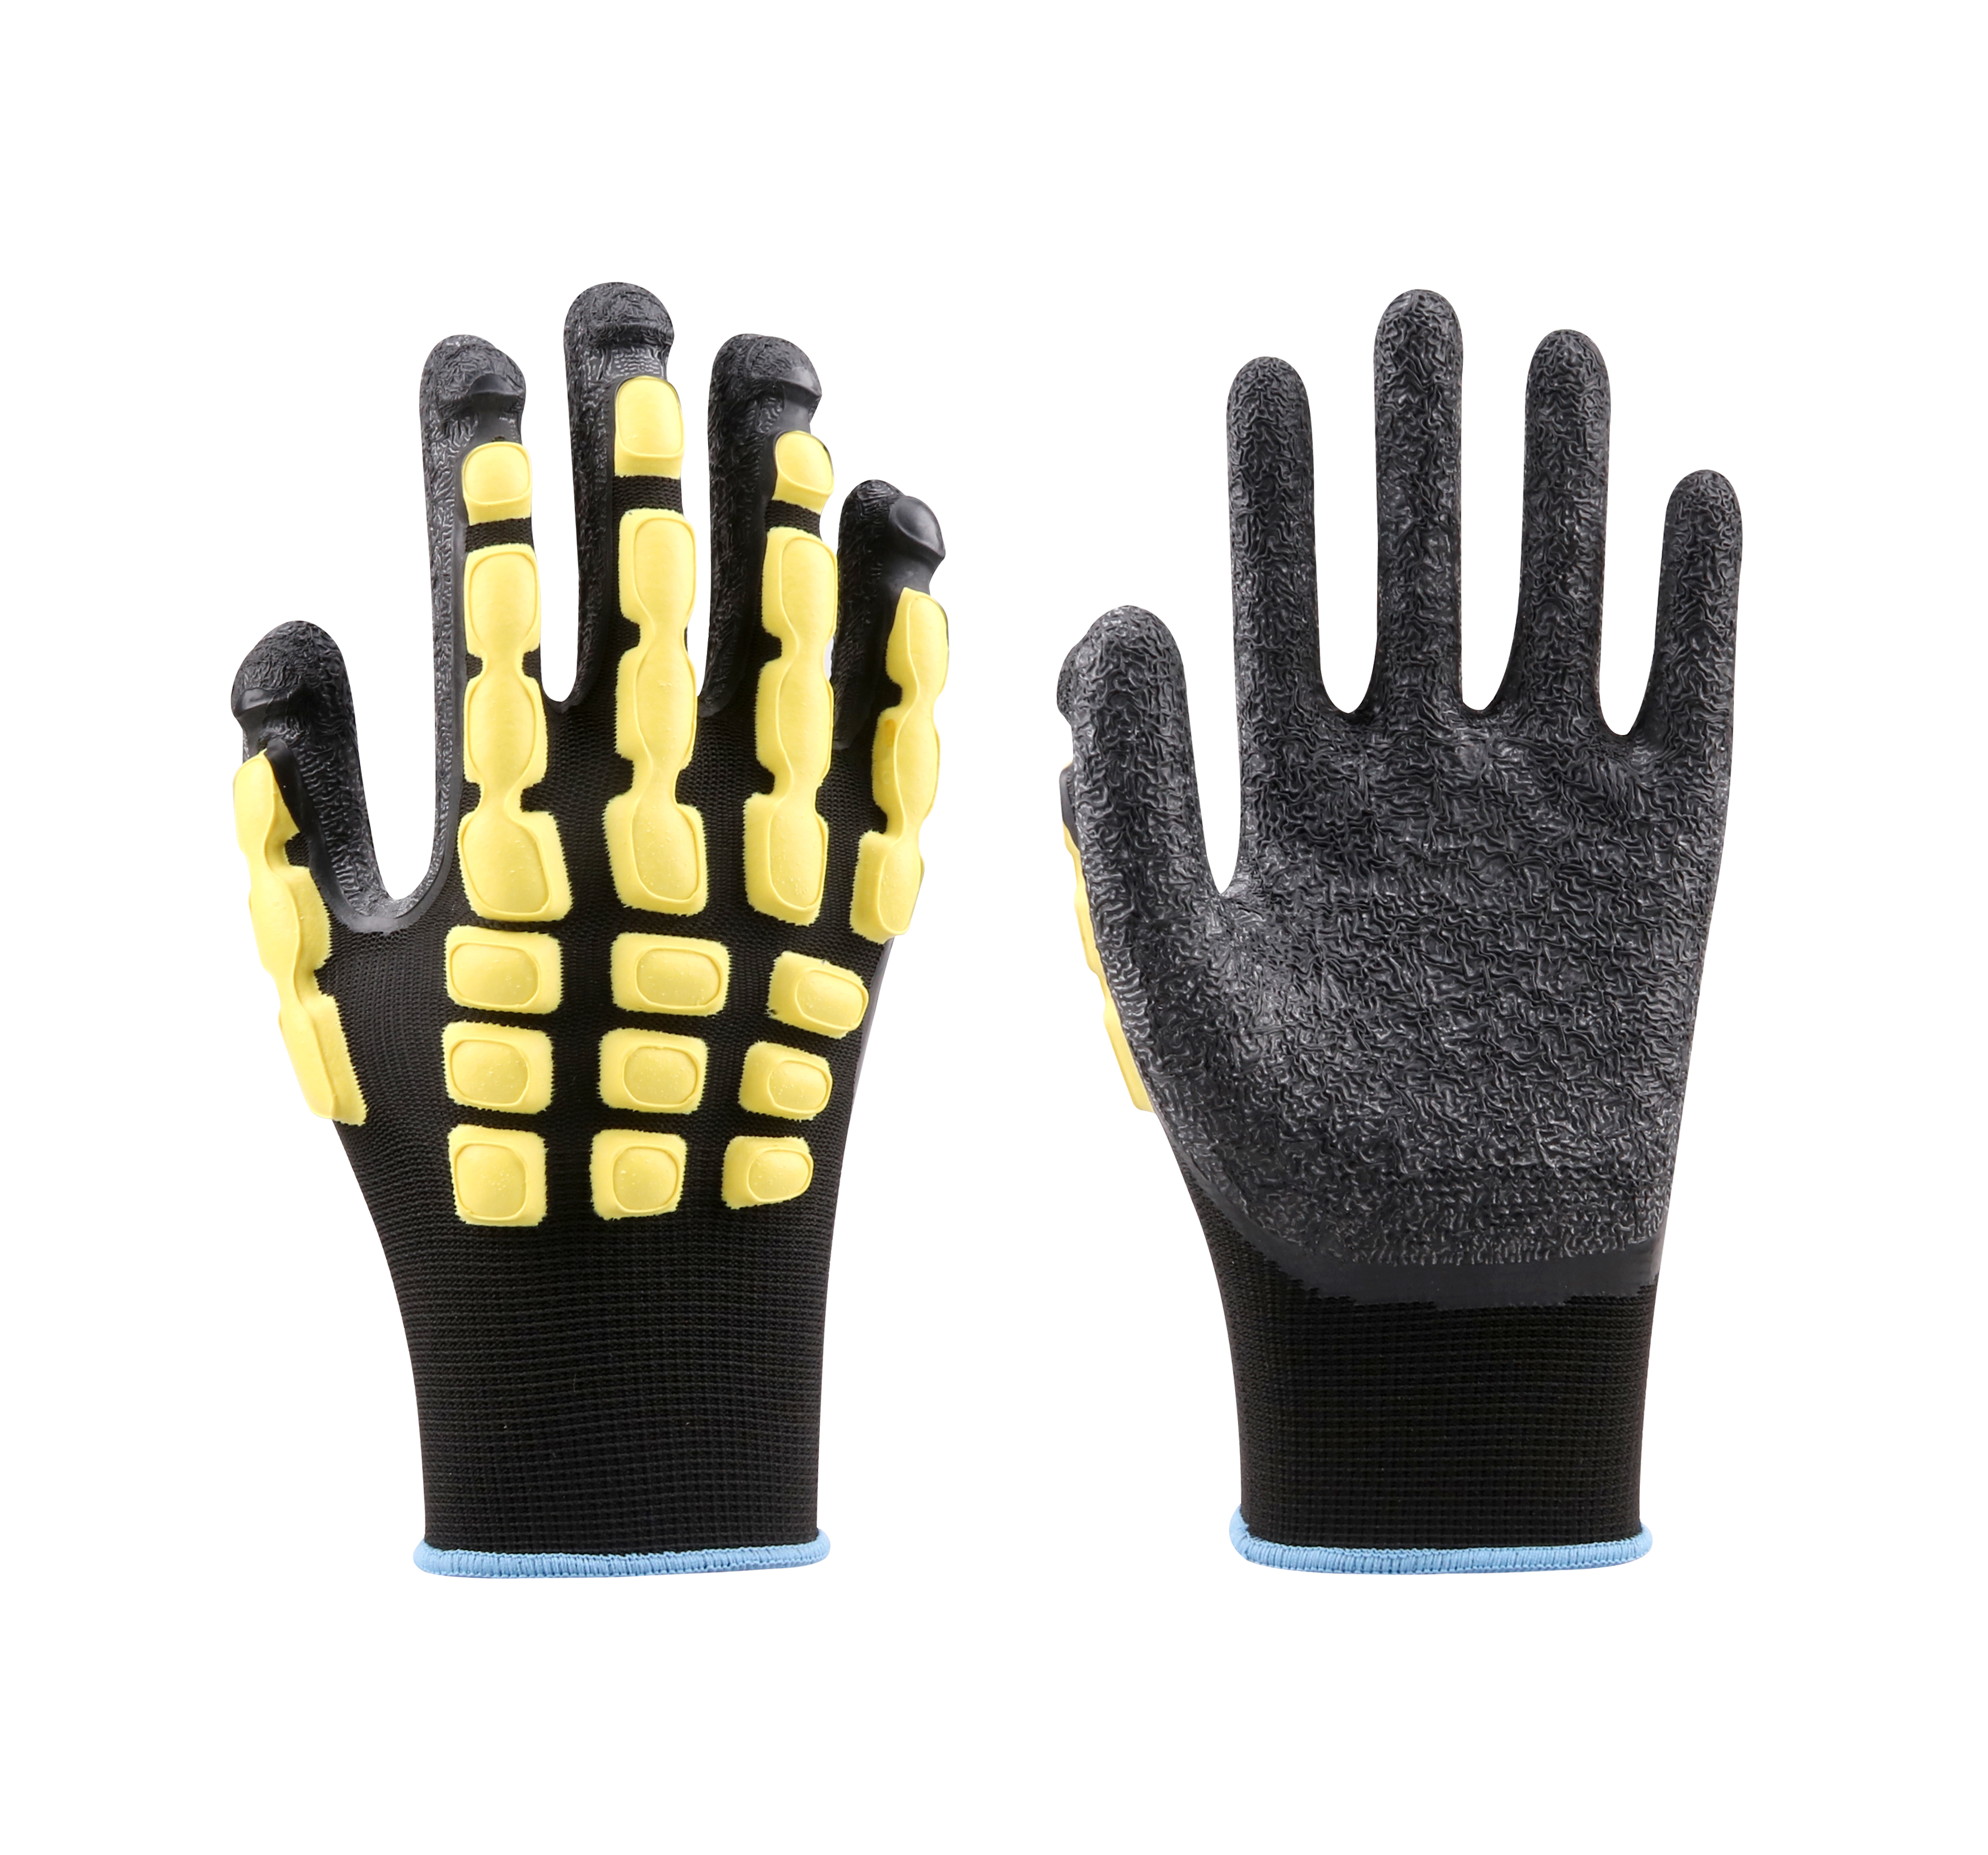 13G Polyester Liner Nitrile Sandy+Latex Dots Coated Gloves, EN388 2131XP, ANSI/ISEA 138:LEVEL 1 